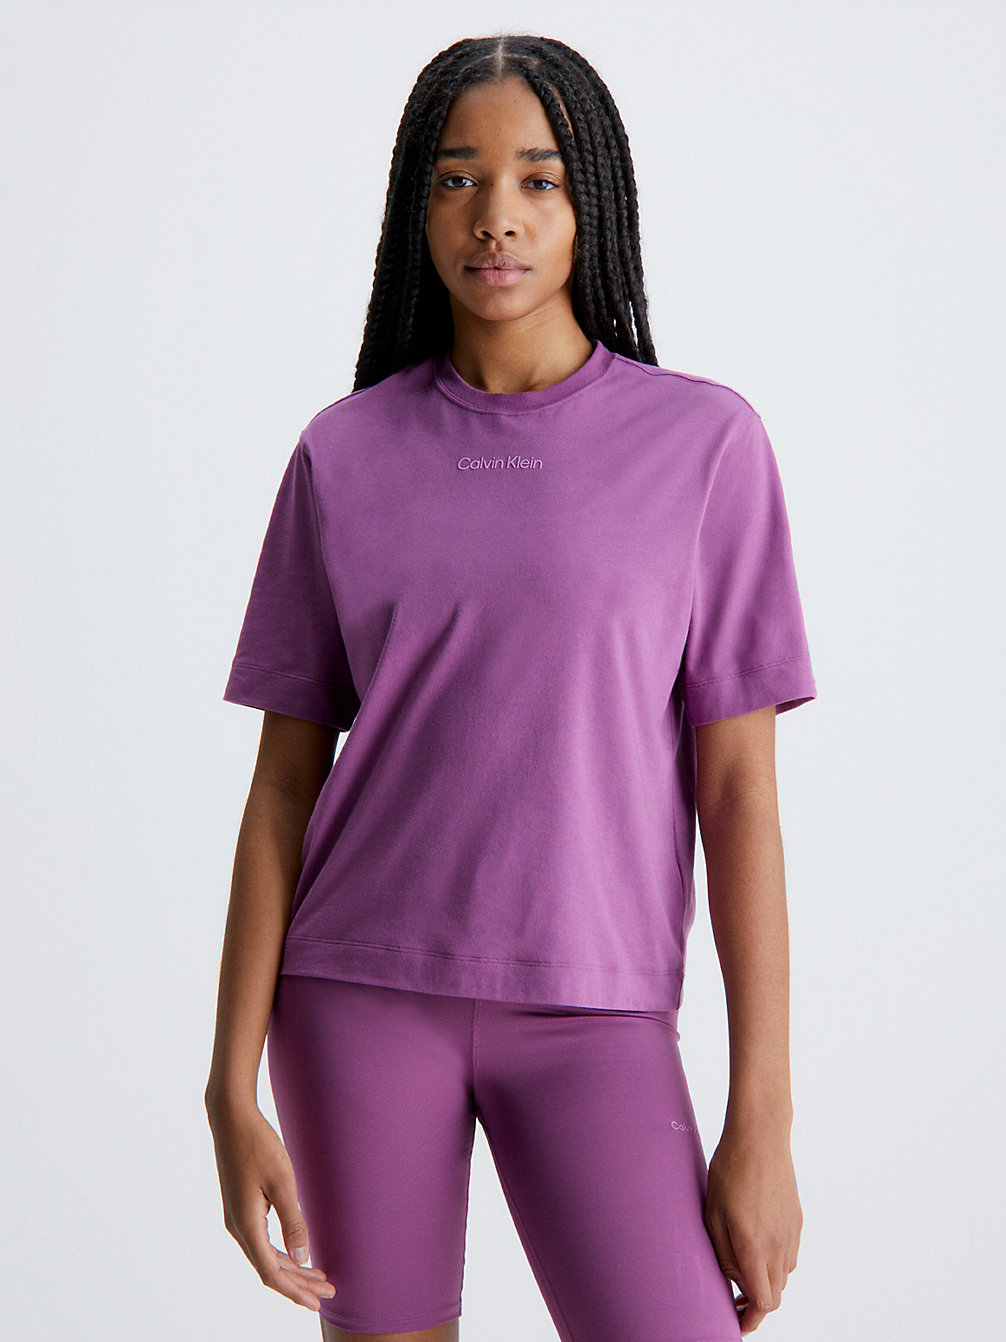 AMETHYST > Gym-T-Shirt > undefined Damen - Calvin Klein